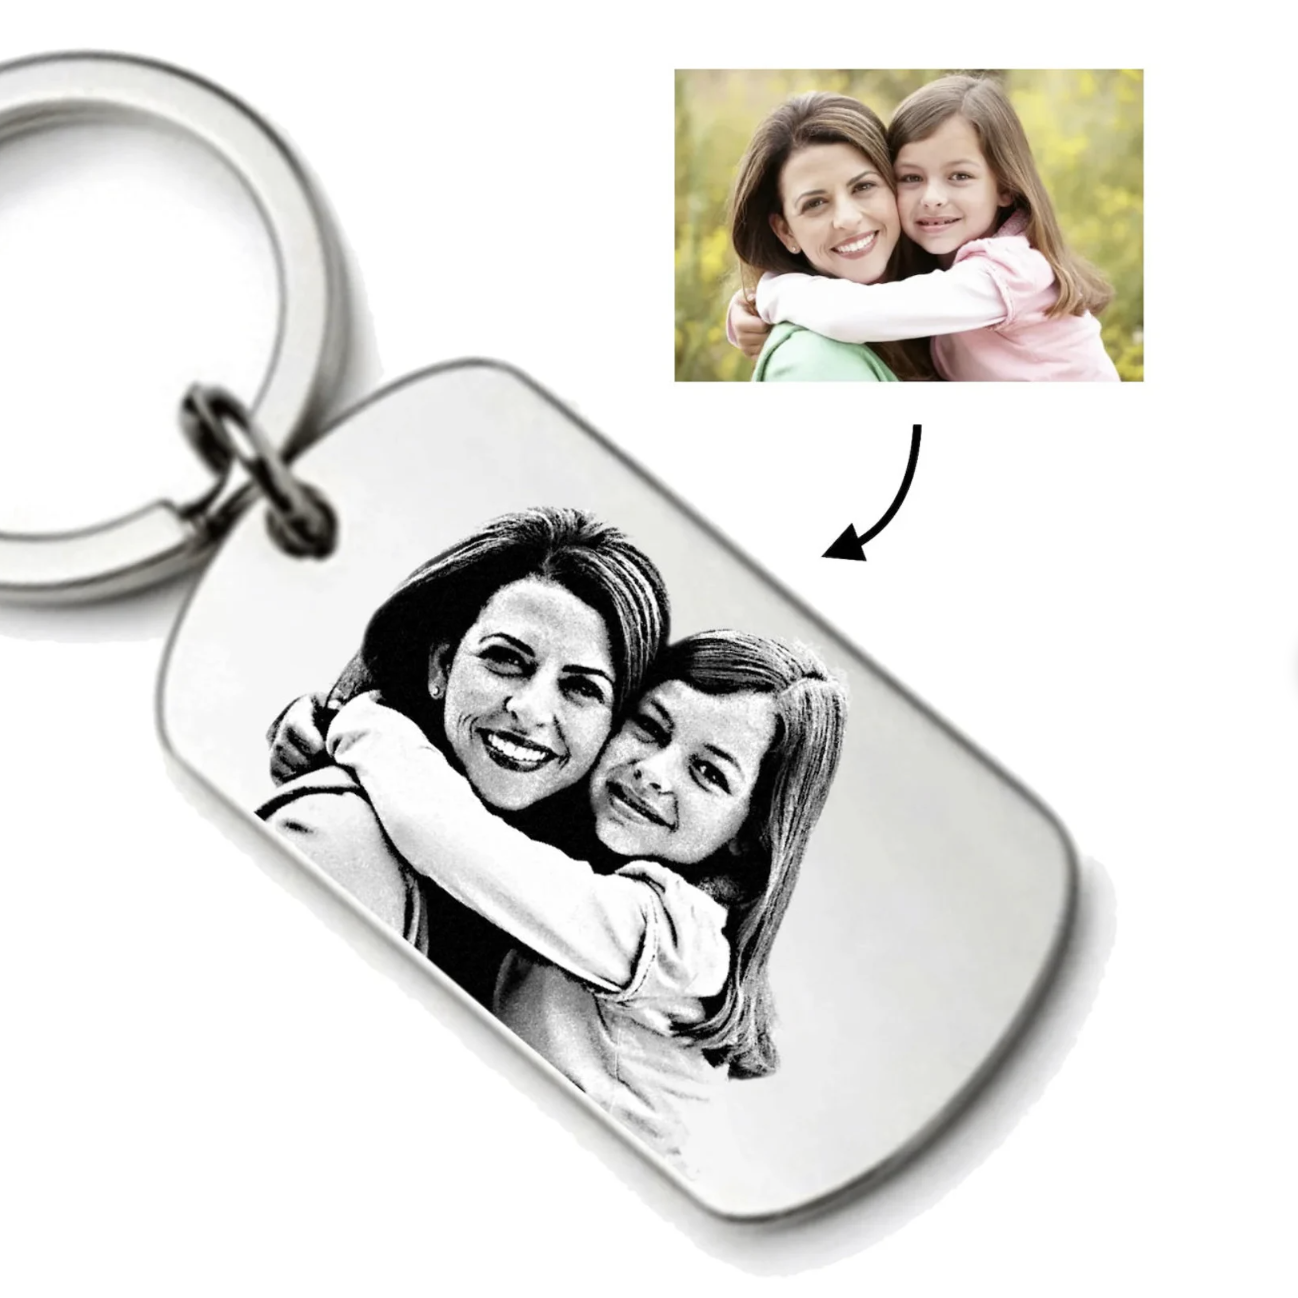 Porte clé Personnalisé Photo en acier inoxydable, porte-clés gravé pour un cadeau unique